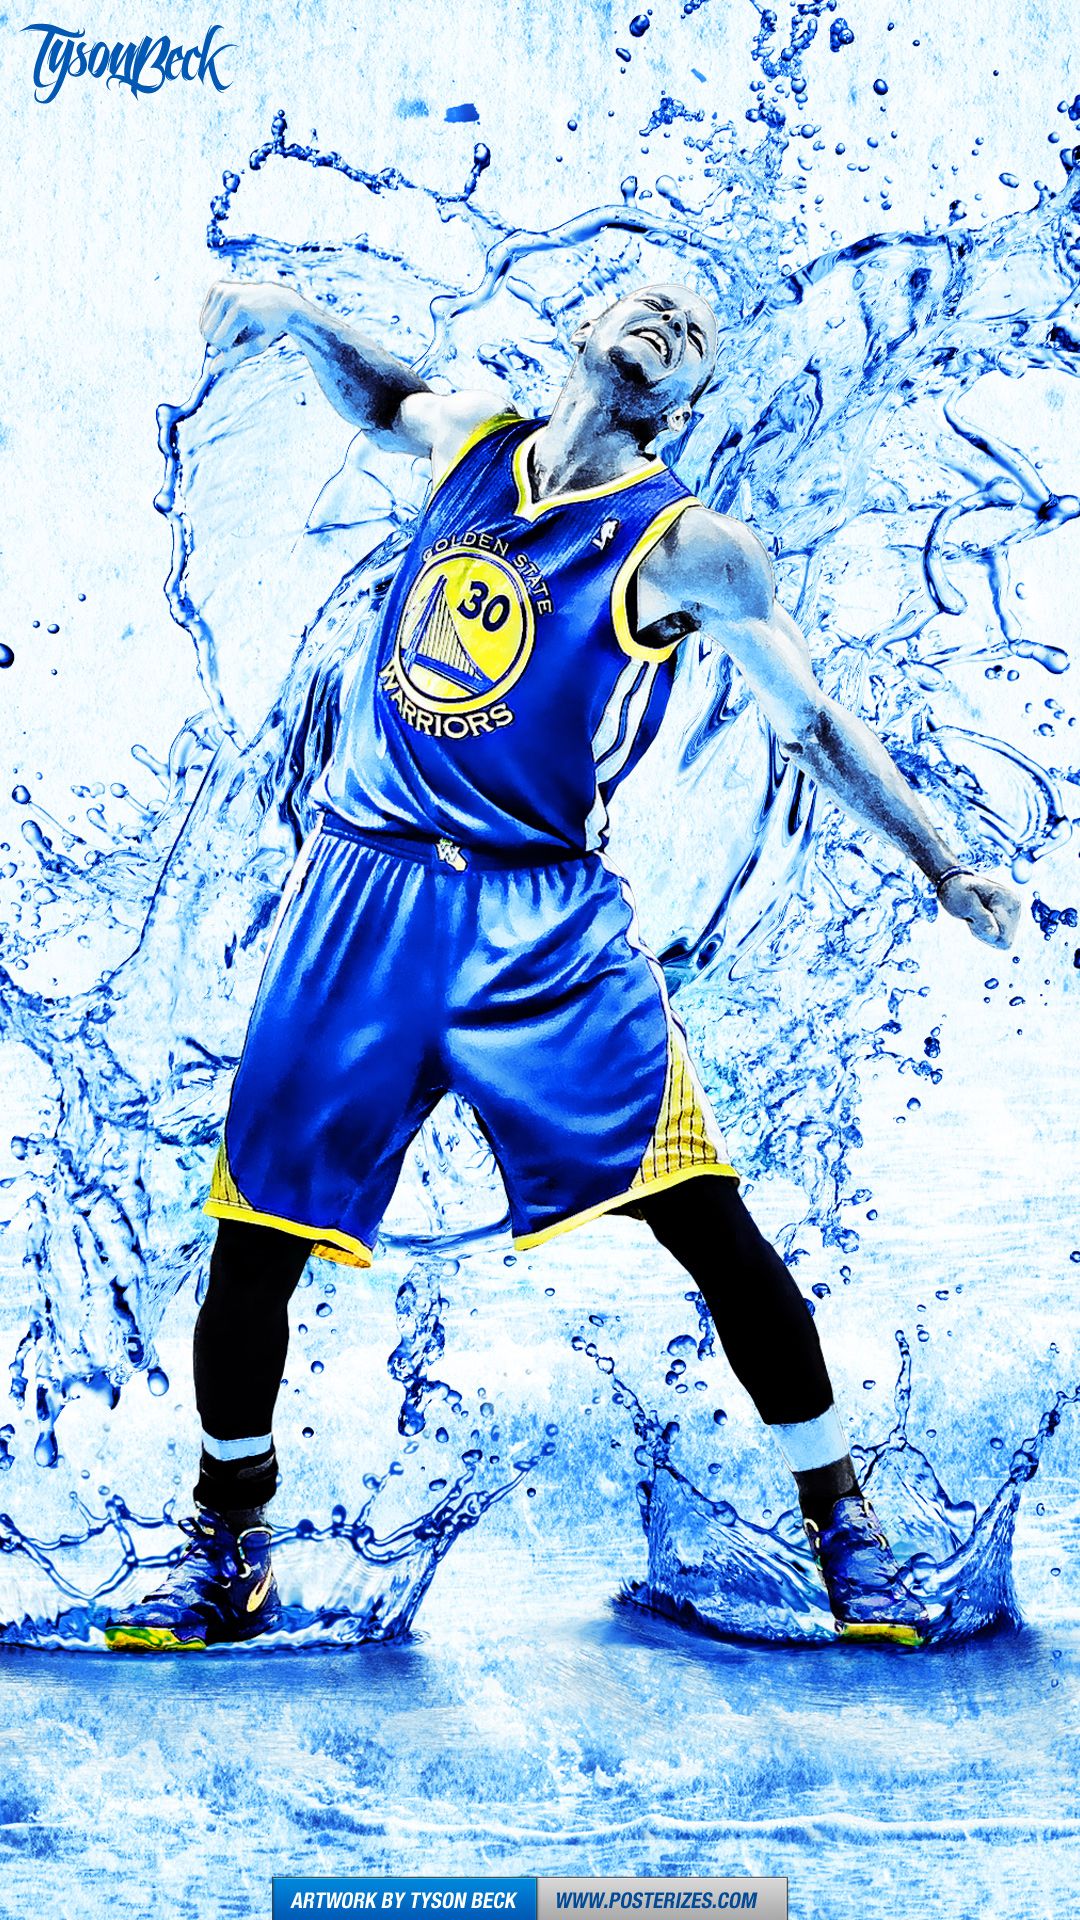 Stephen Curry Wallpaper Water - 1080x1920 Wallpaper 